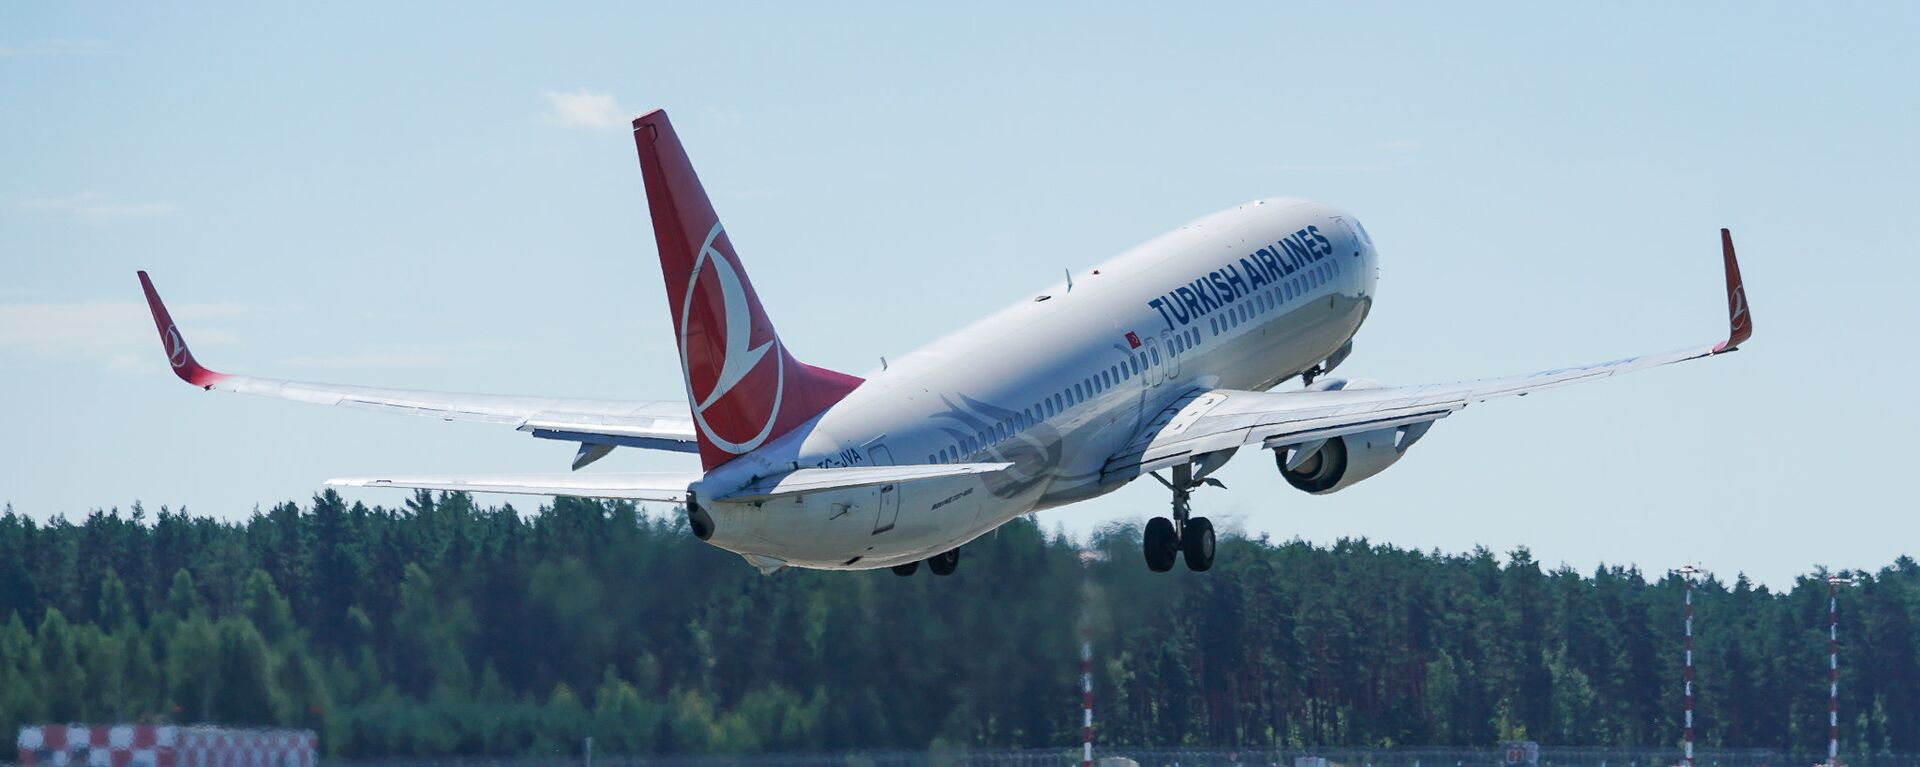 Самолет Boeing 737 авиакомпании Turkish Airlines взлетает из аэропорта Рига - Sputnik Latvija, 1920, 10.11.2021